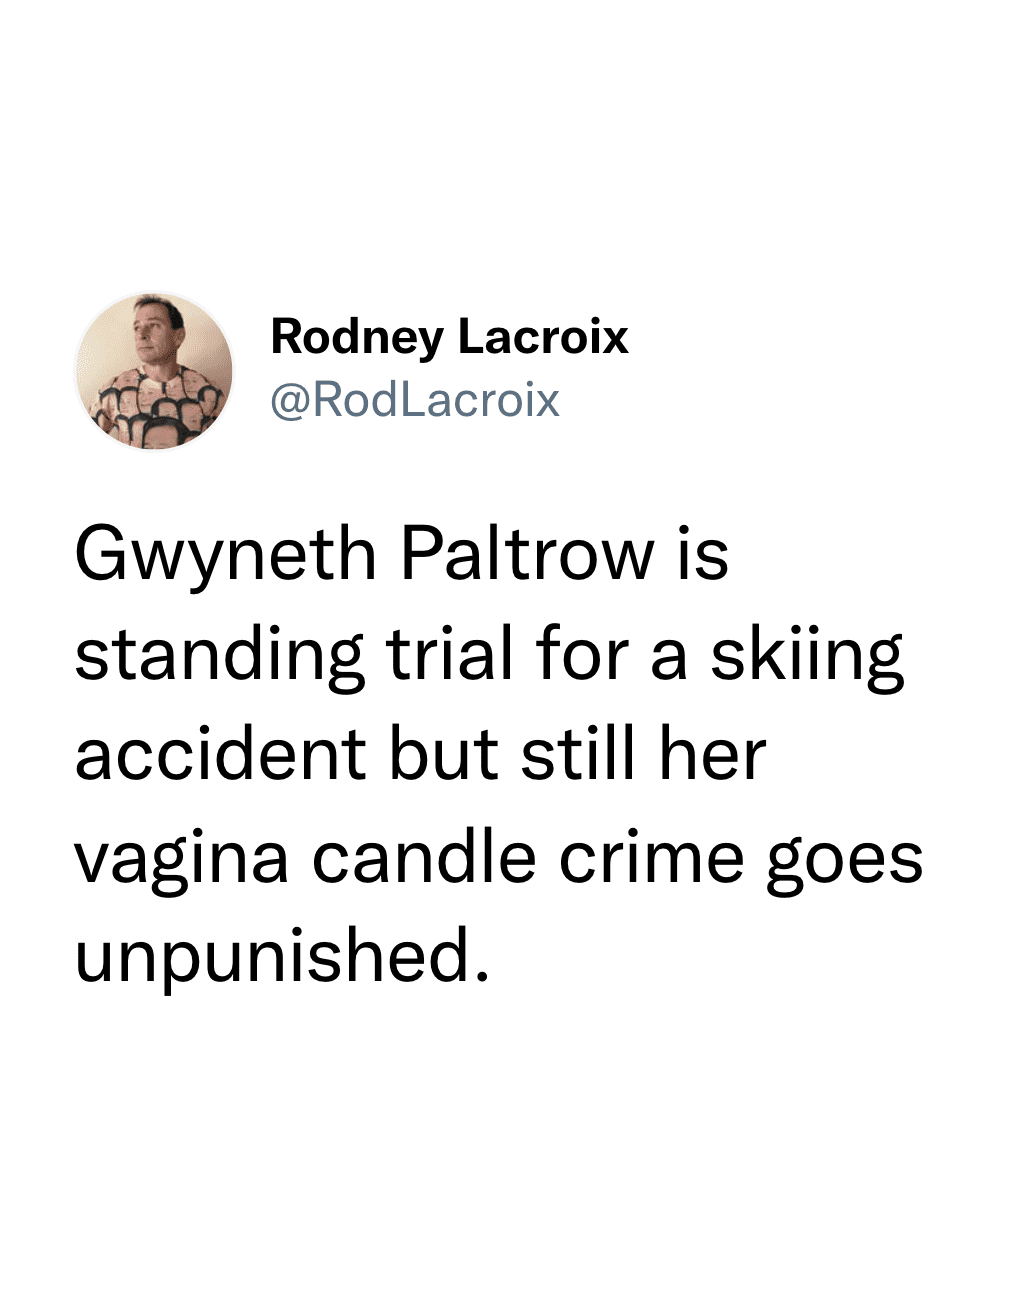 Gwyneth Paltrow ski trial meme - vagina candle